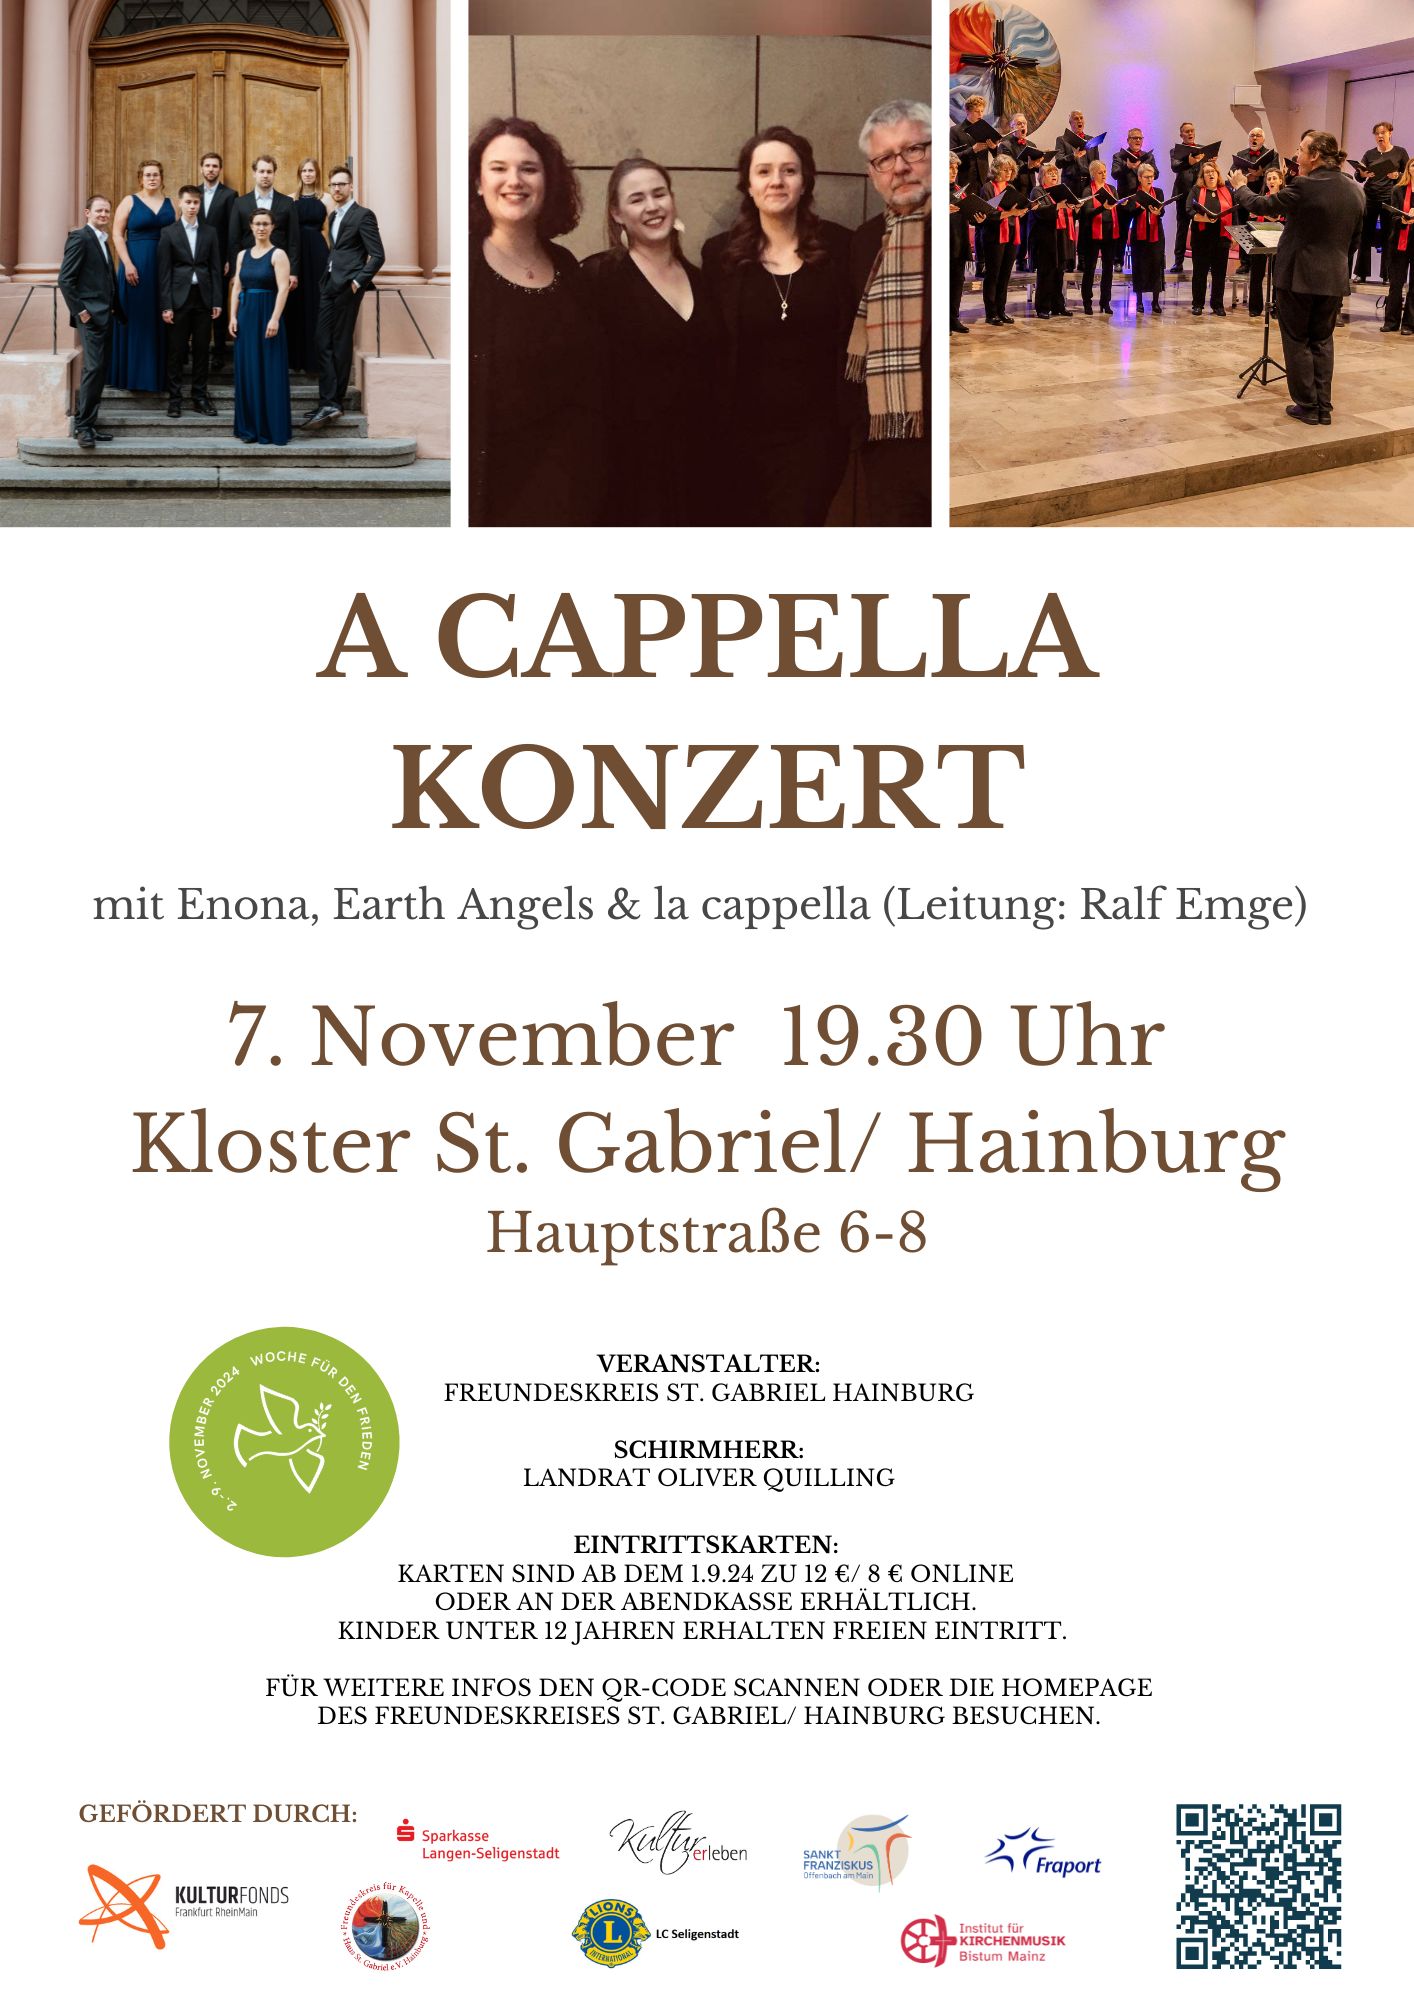 A cappella Konzert (c) Landsiedel